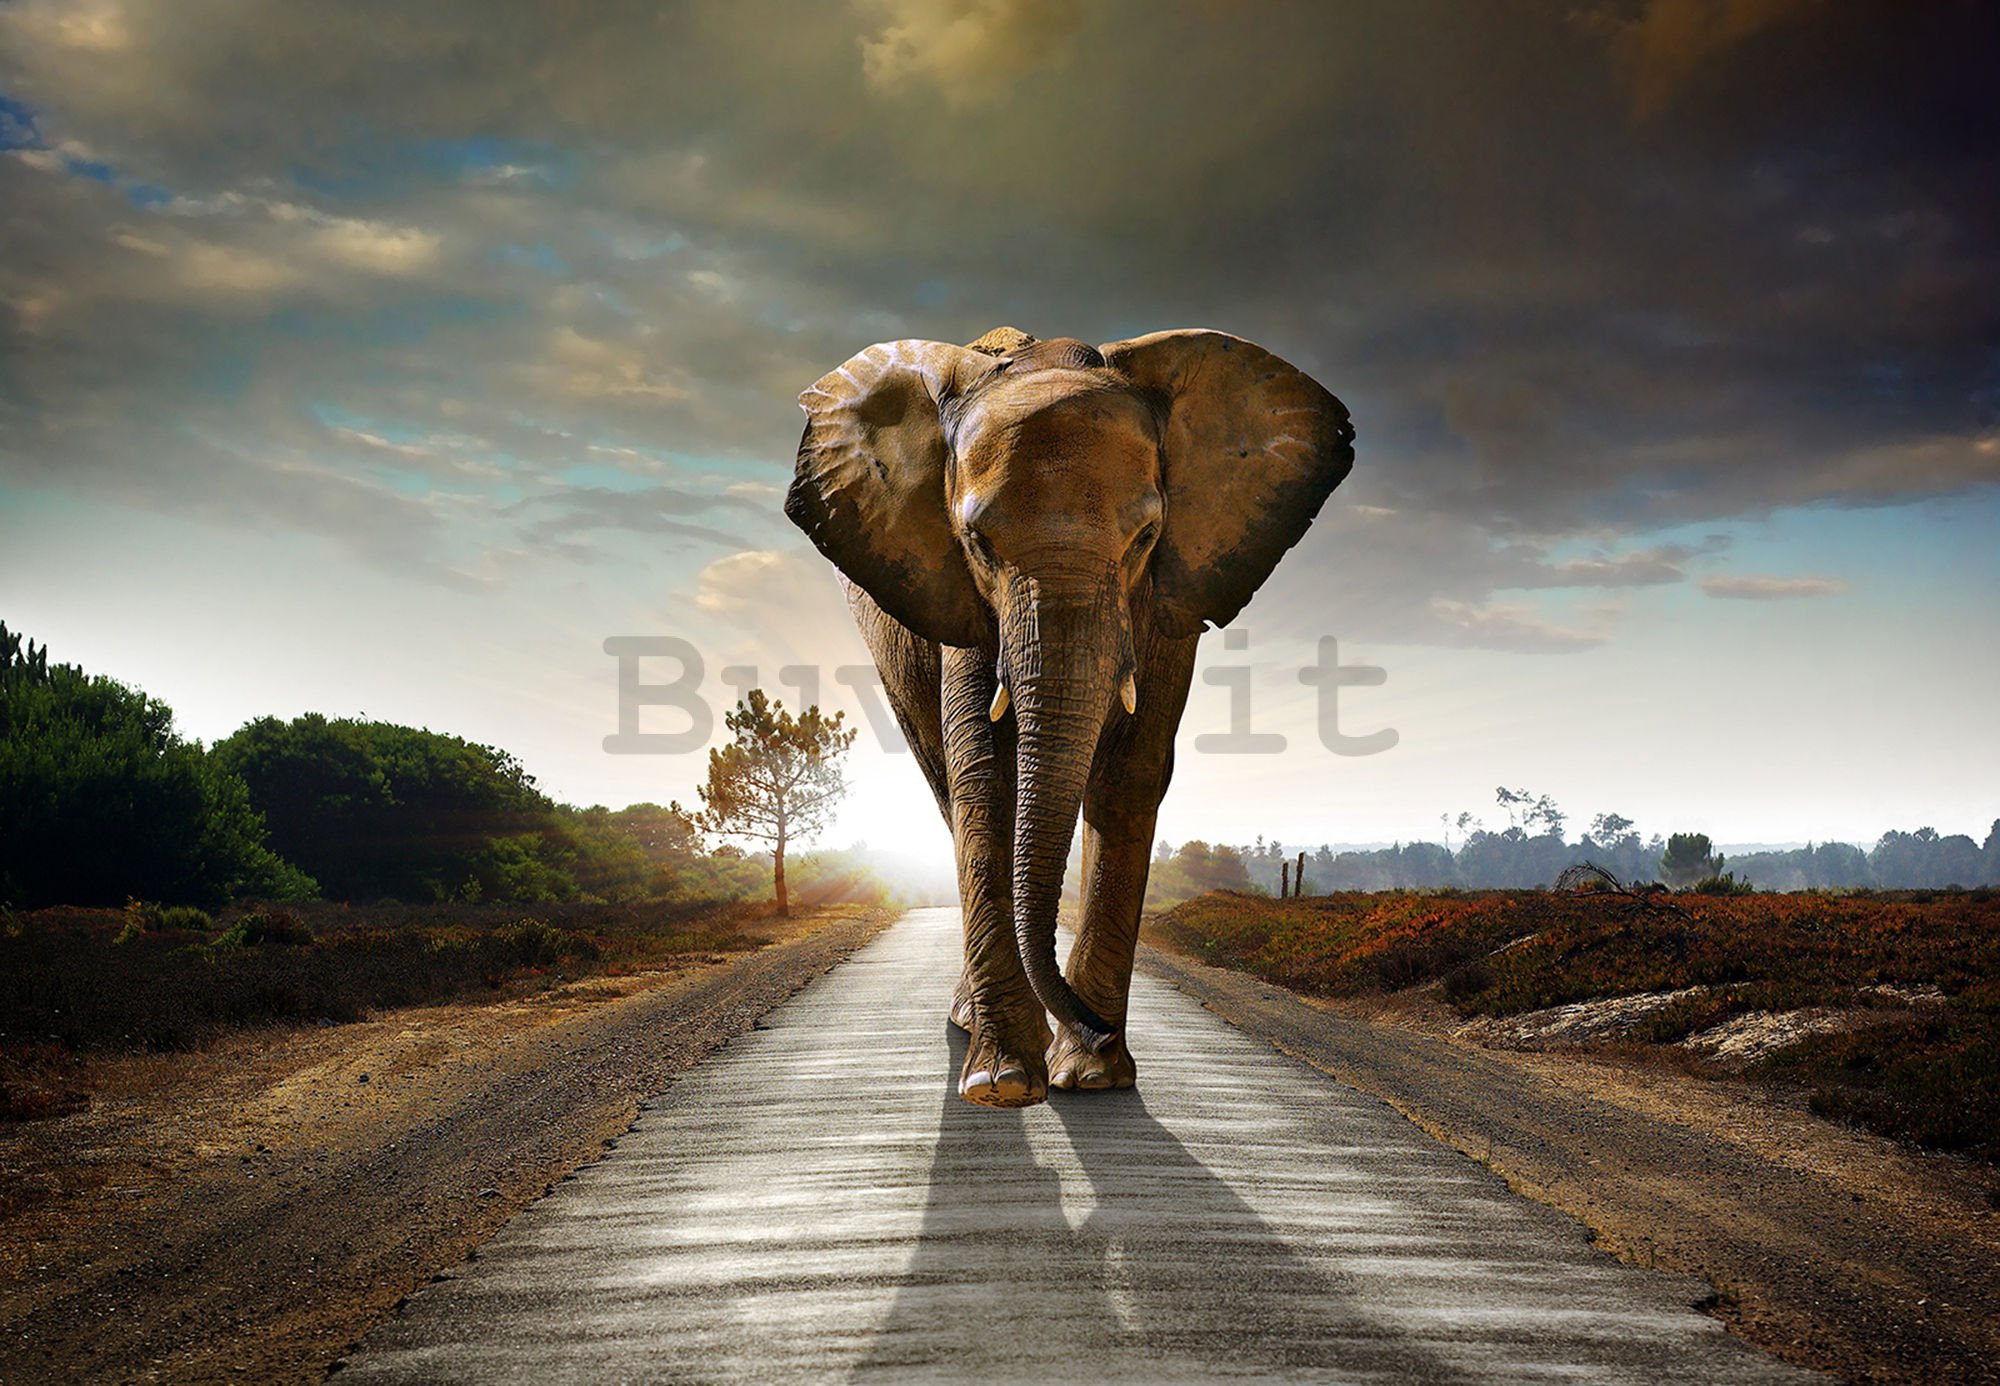 Fotomurale in TNT: Elefante (4) - 184x254 cm